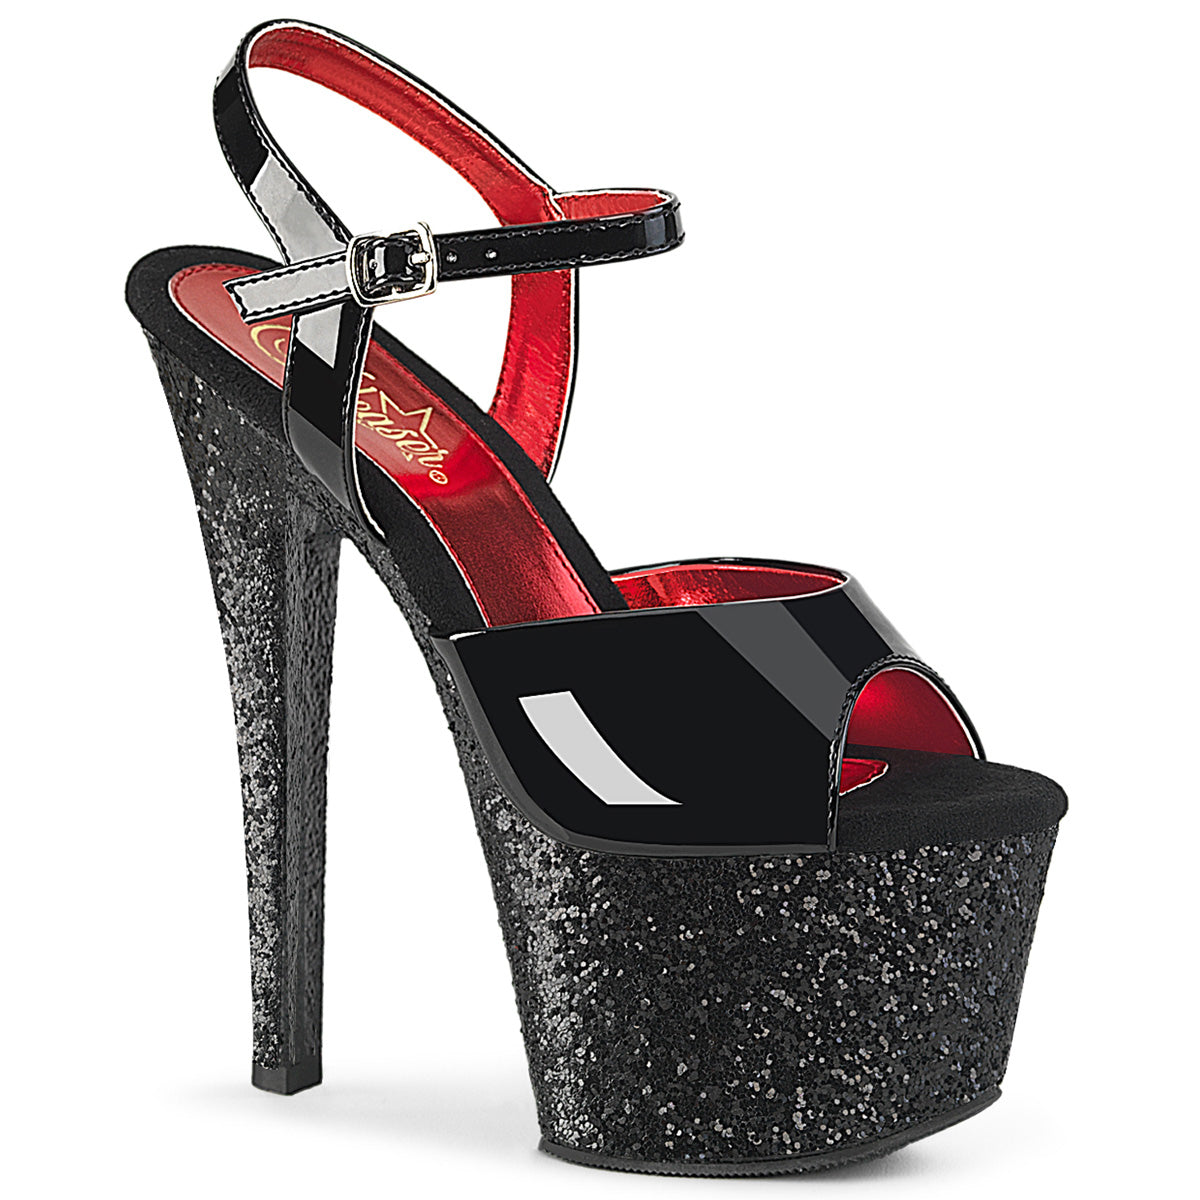 SKY-309 Black & Red Ankle Peep Toe High Heel